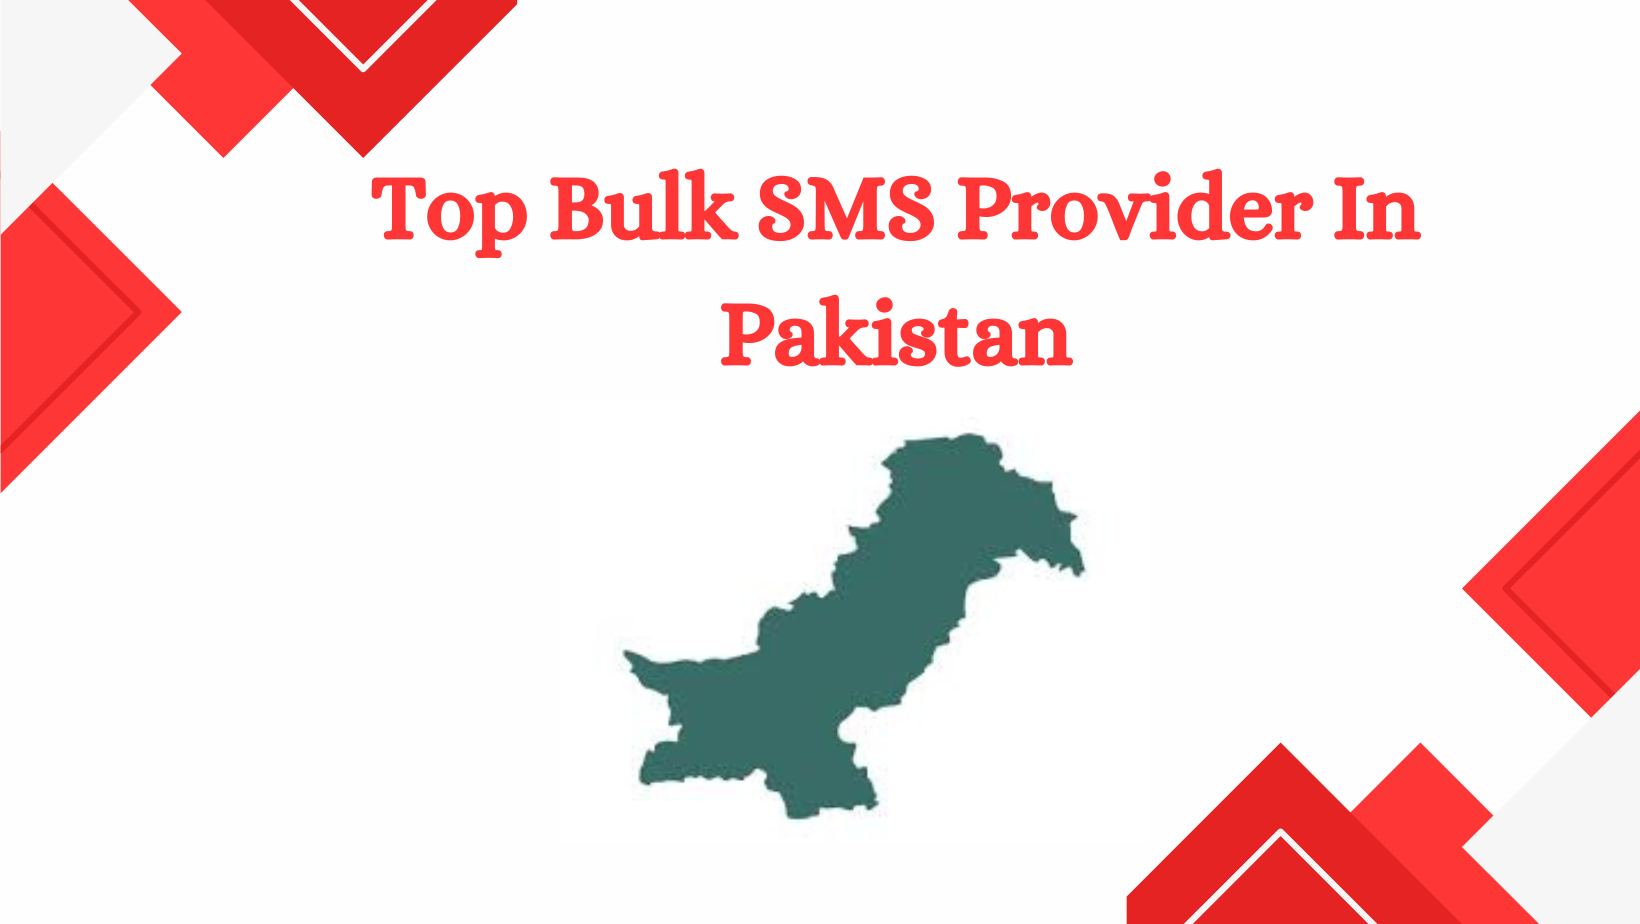 Top Bulk SMS Provider In Pakistan